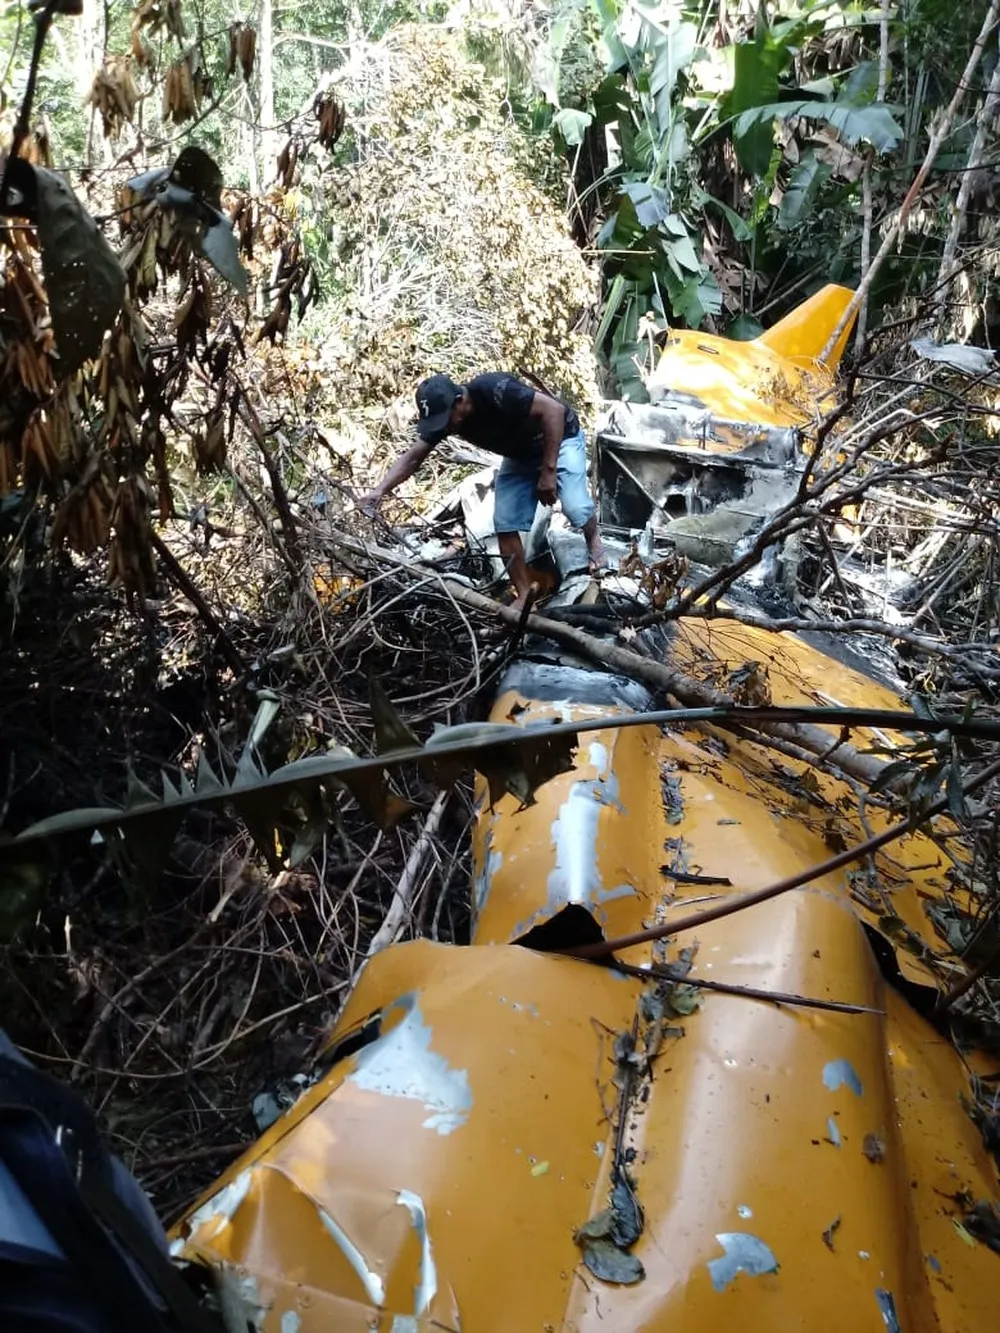 Piloto se perdeu em mata após queda de avião, se alimentou de bolachas e usou capacete como proteção em MT